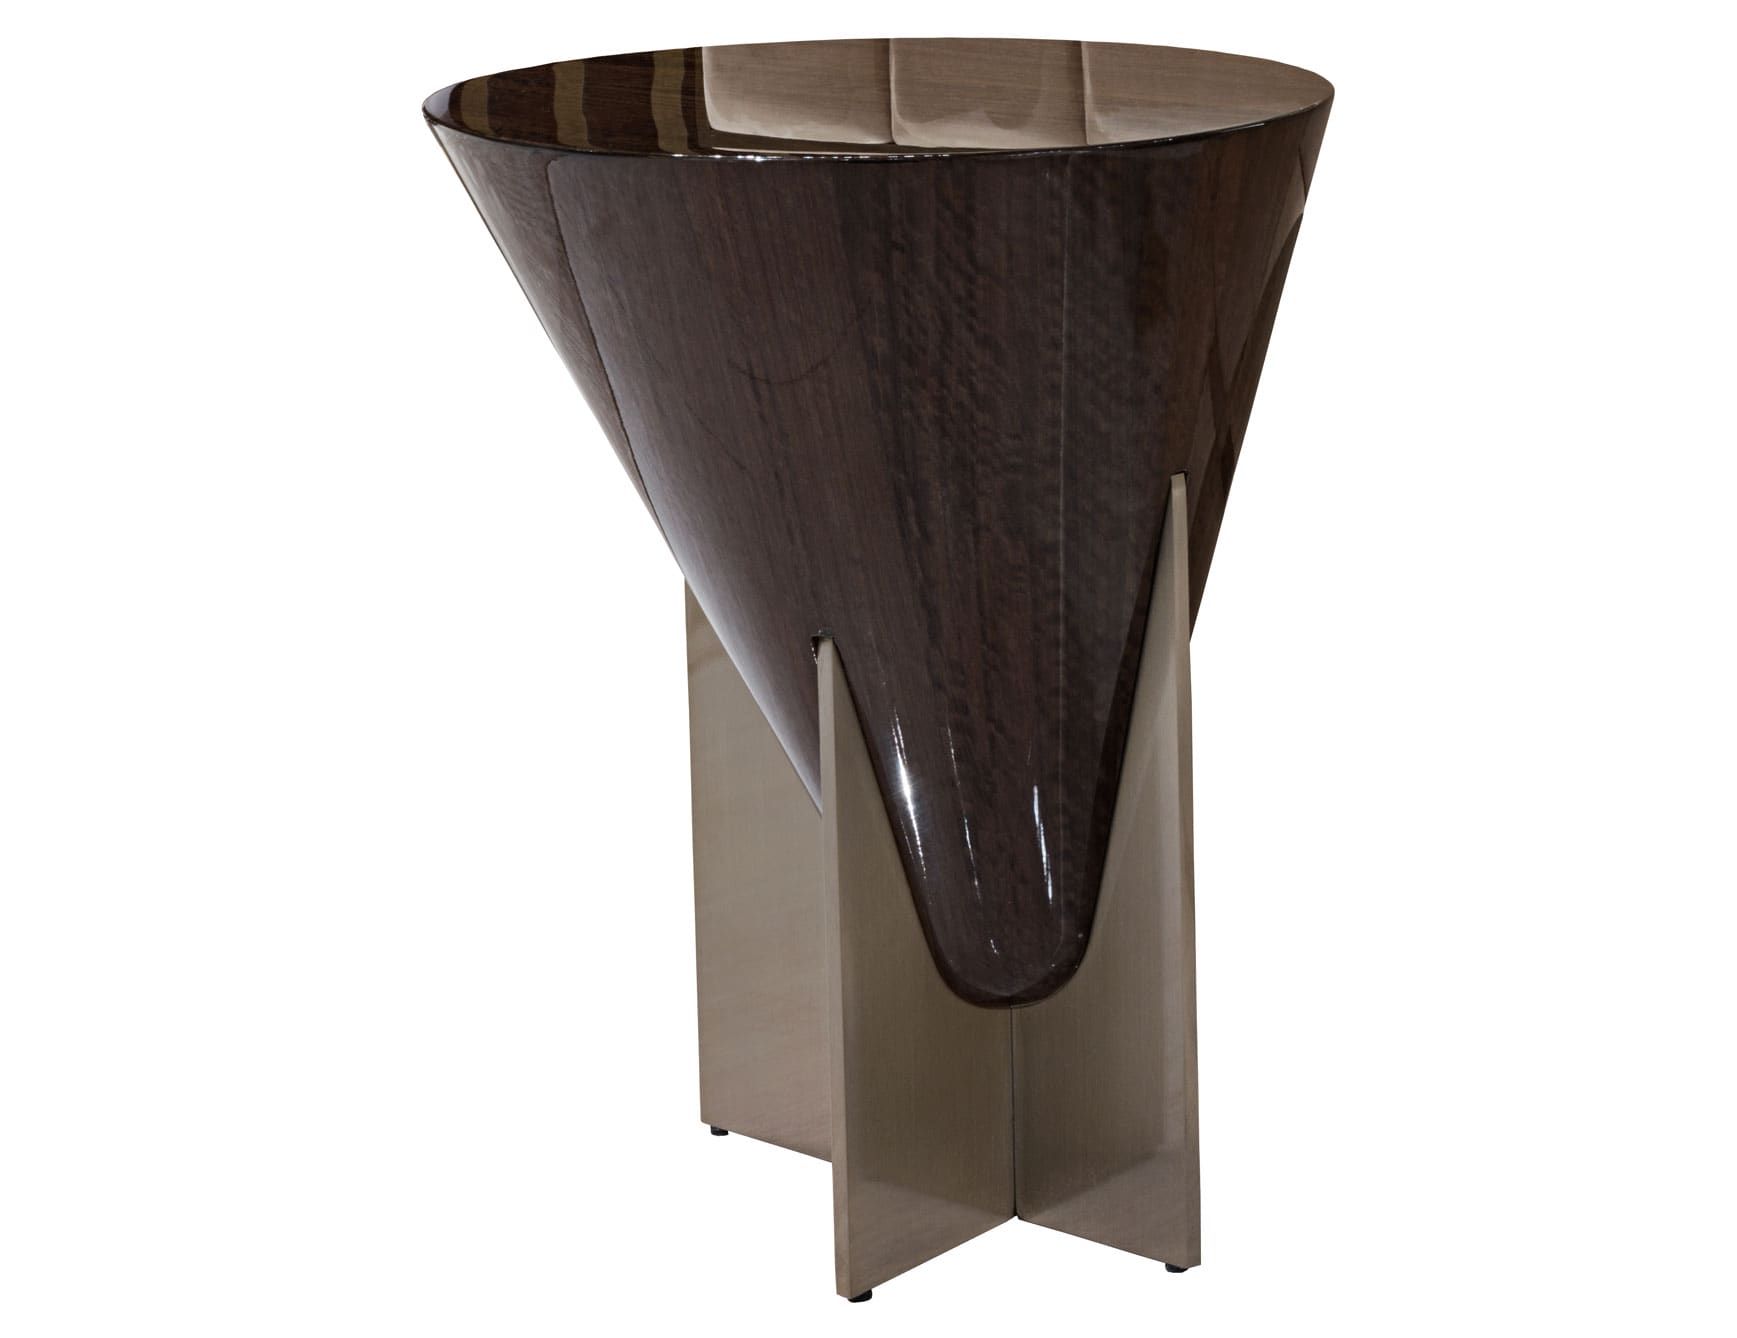 Minstrel modern luxury coffee table with brown veneered wood